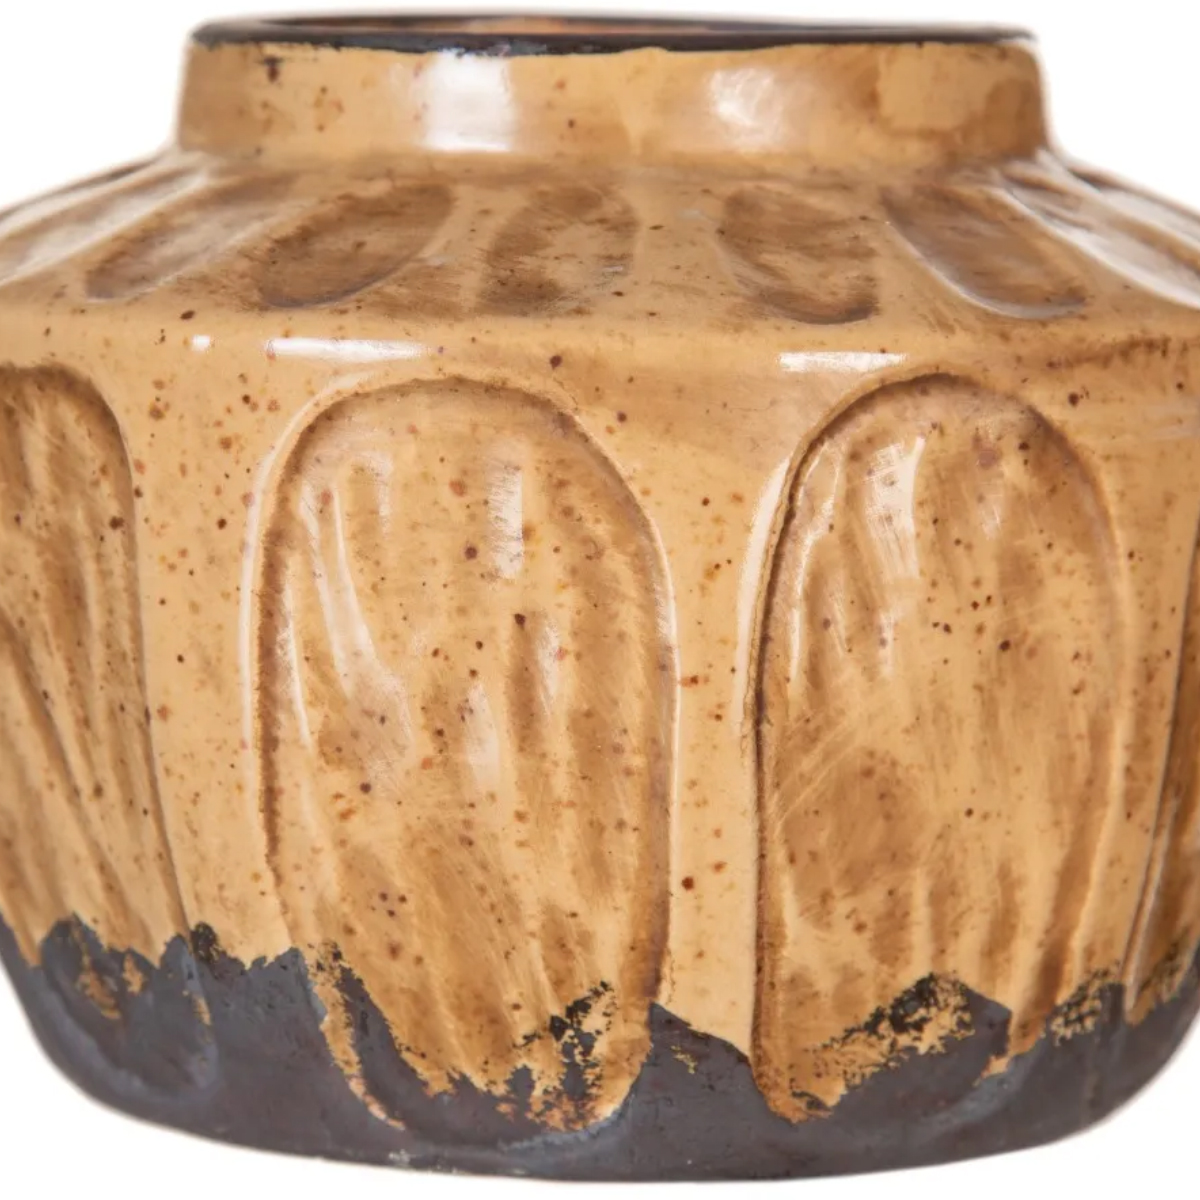 Aged ceramic vase